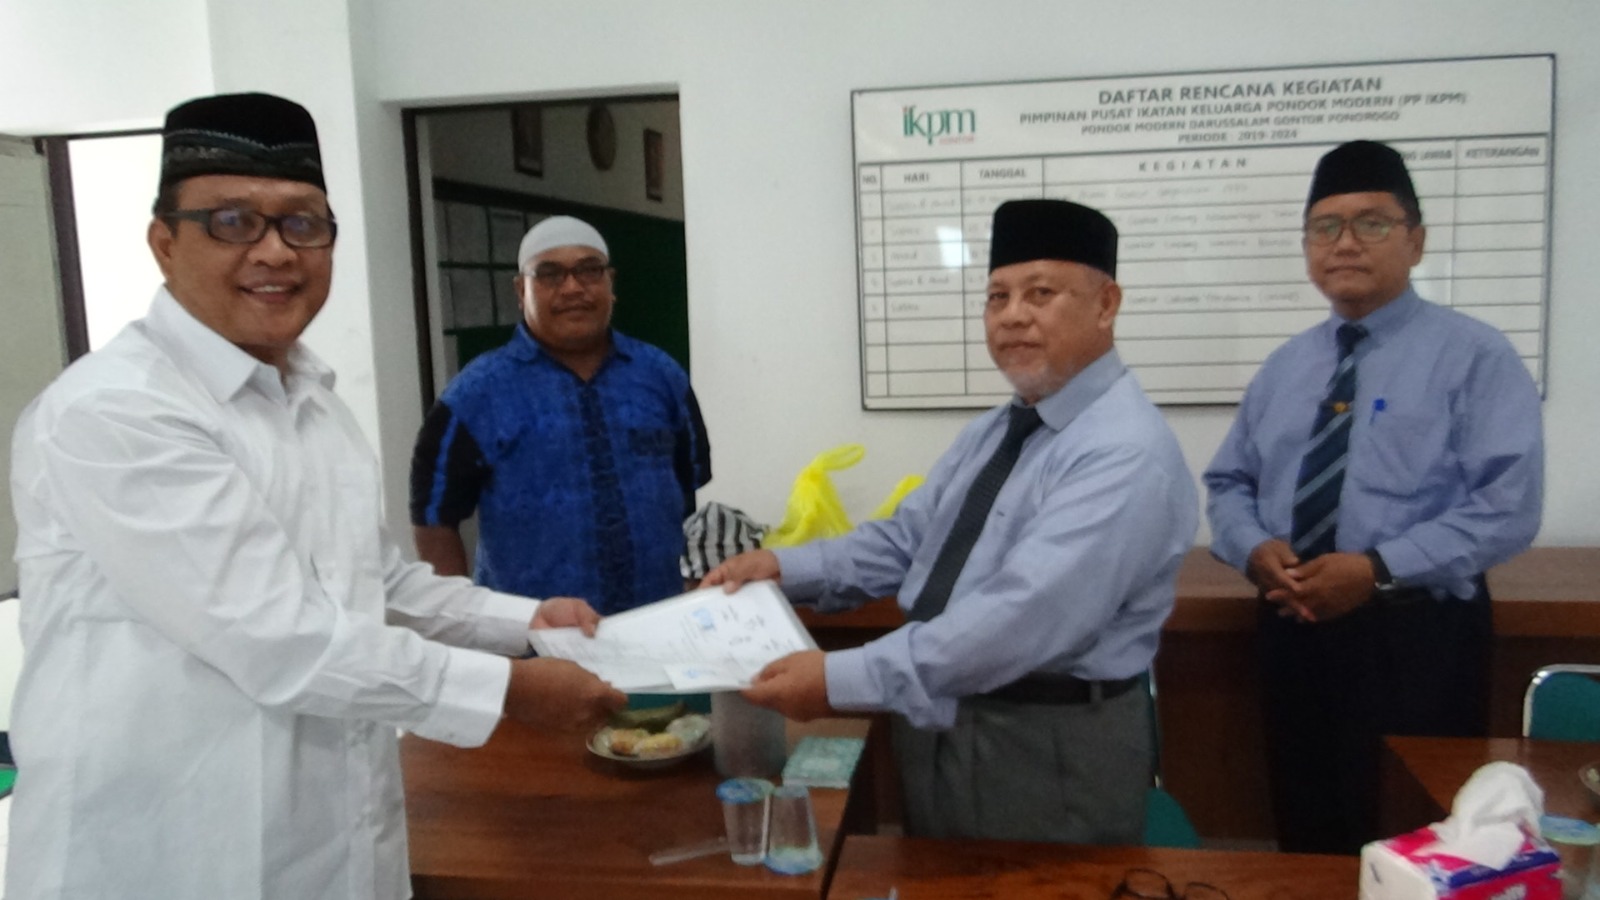 IKPM Cabang Bali Menjaga Amanah melalui Laporan Kegiatan dan Keuangan Organisasi